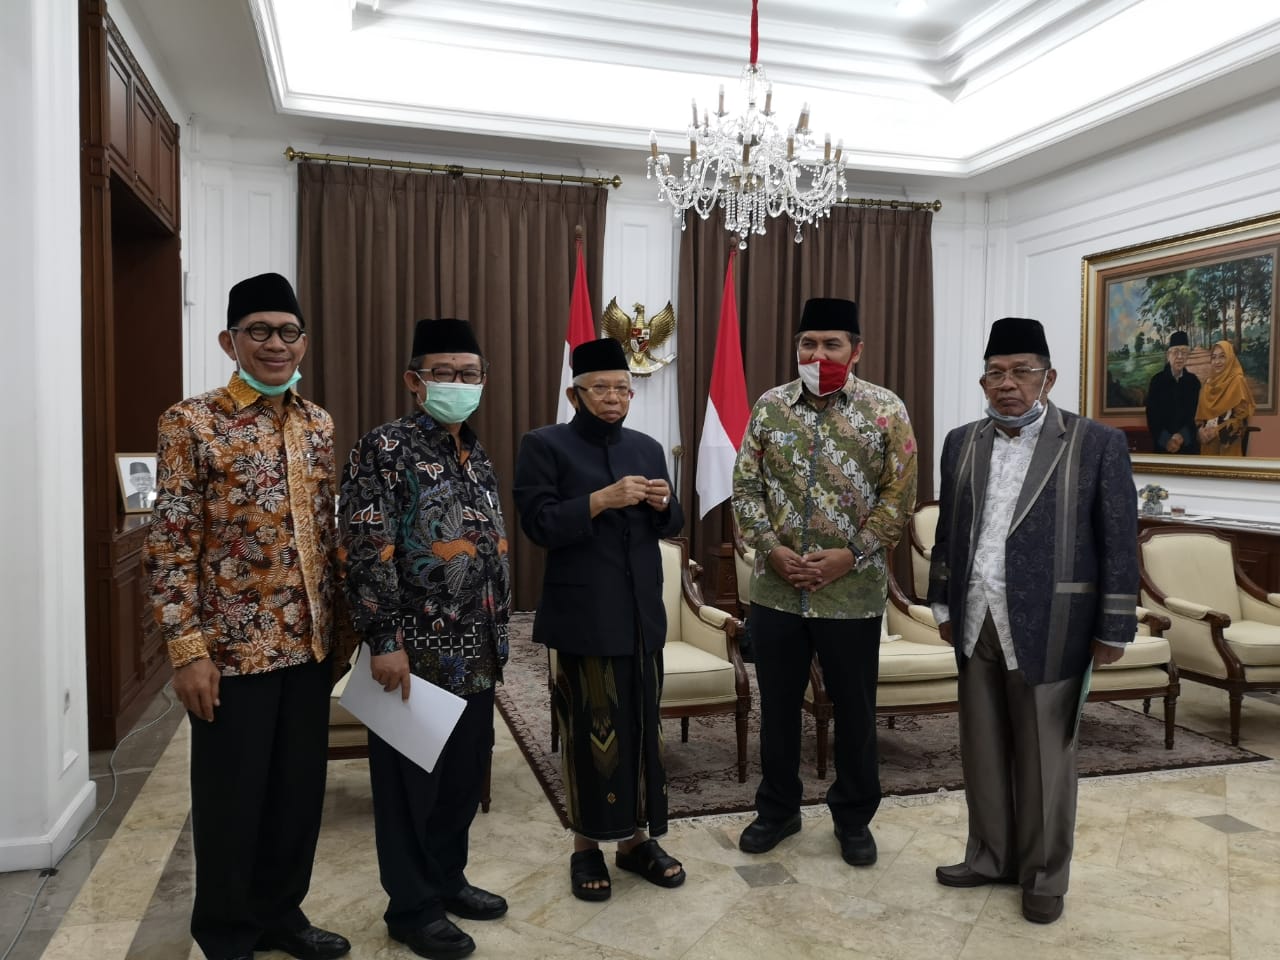 Pertemuan di Rumah Dinas Wapres Maruf Amin Jl. Dionegoro Jakarta Pusat, Selasa malam, mulai pukul 19.00-20.50 WIB. (Foto: setpres)